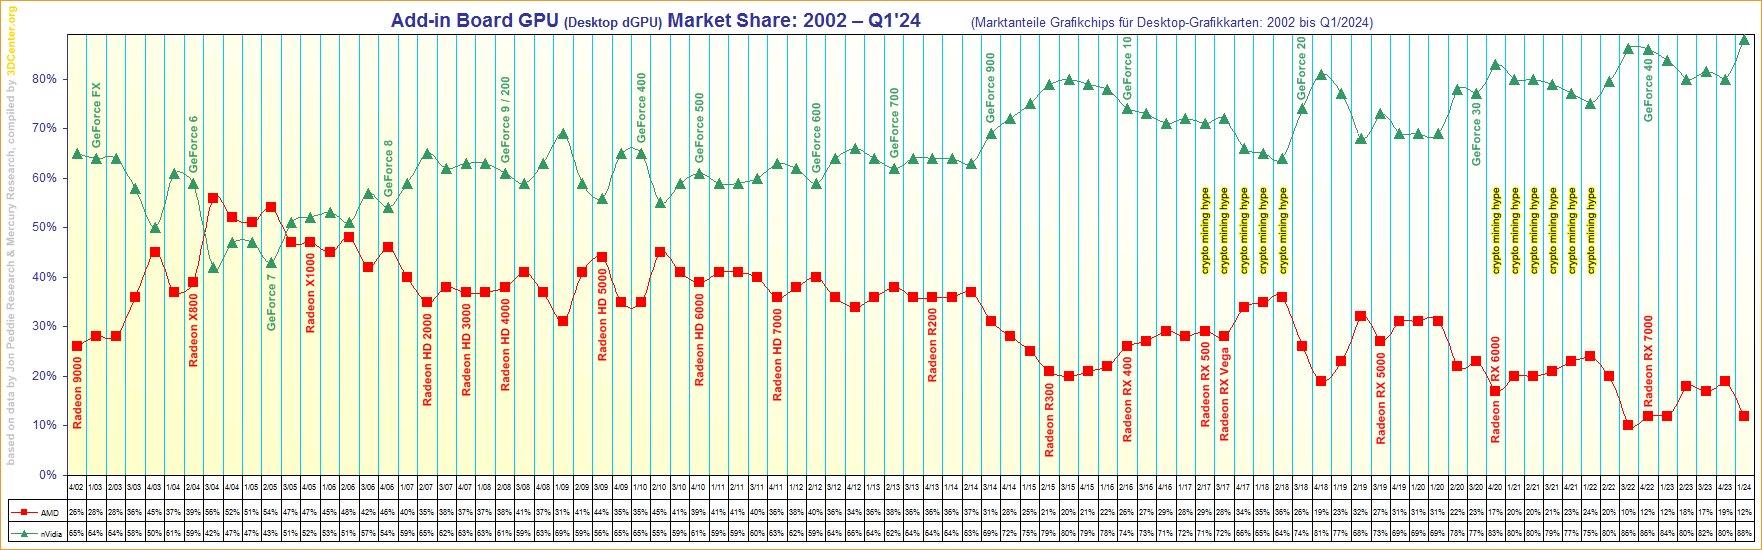 Parts de marché GPU dédiés desktop AMD / NVIDIA depuis 2002 © 3DCenter [cliquer pour agrandir]